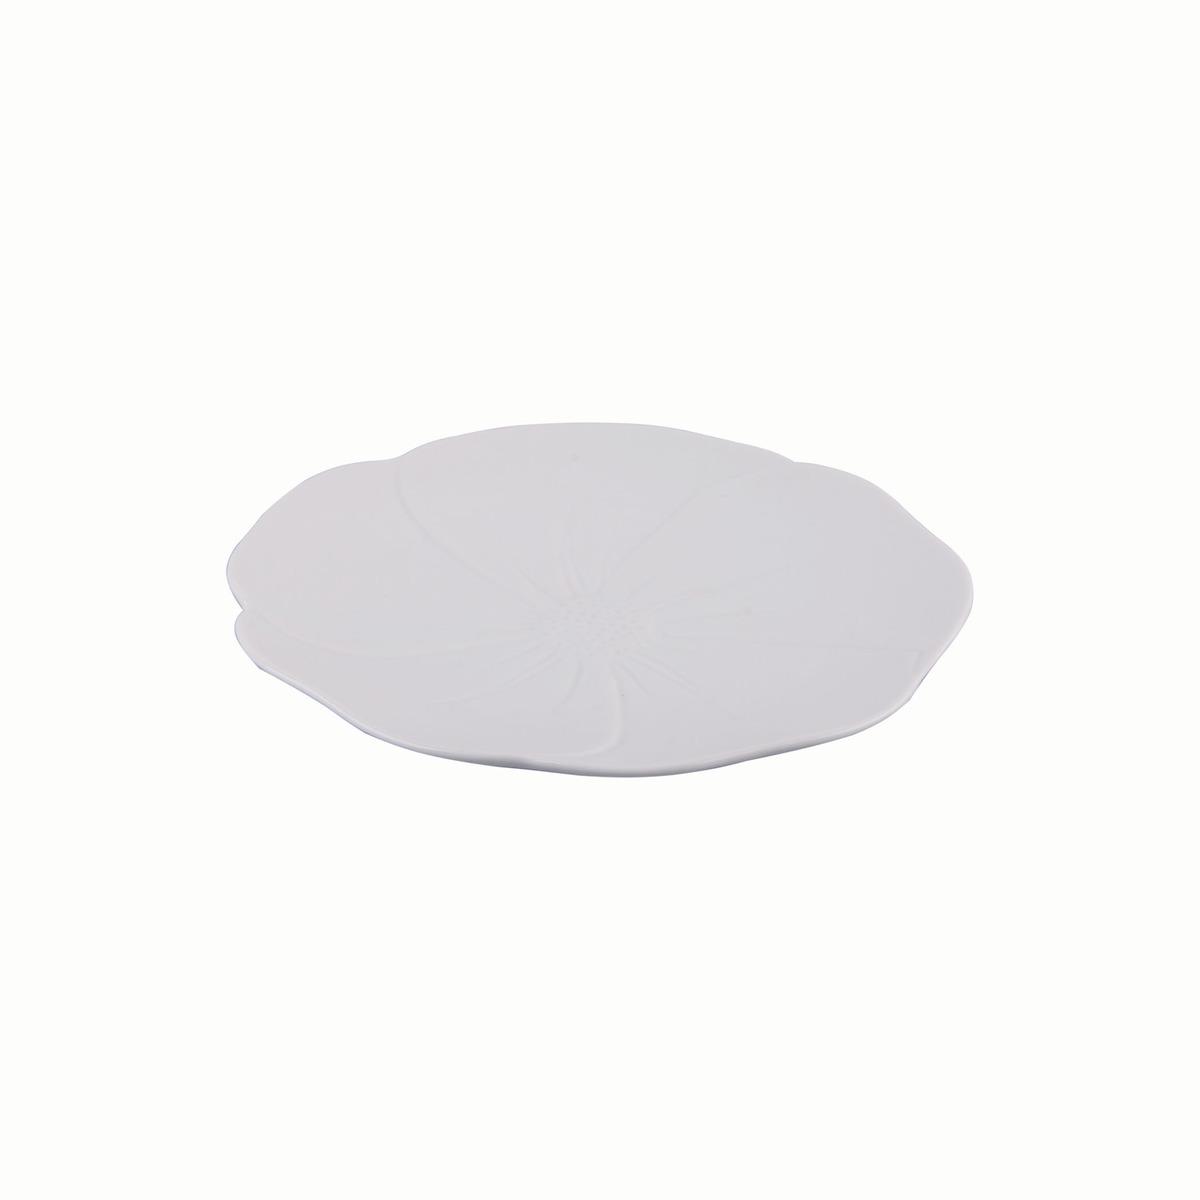 Assiette ronde bord incurvé en porcelaine - Diamètre 20,5 cm - Blanc